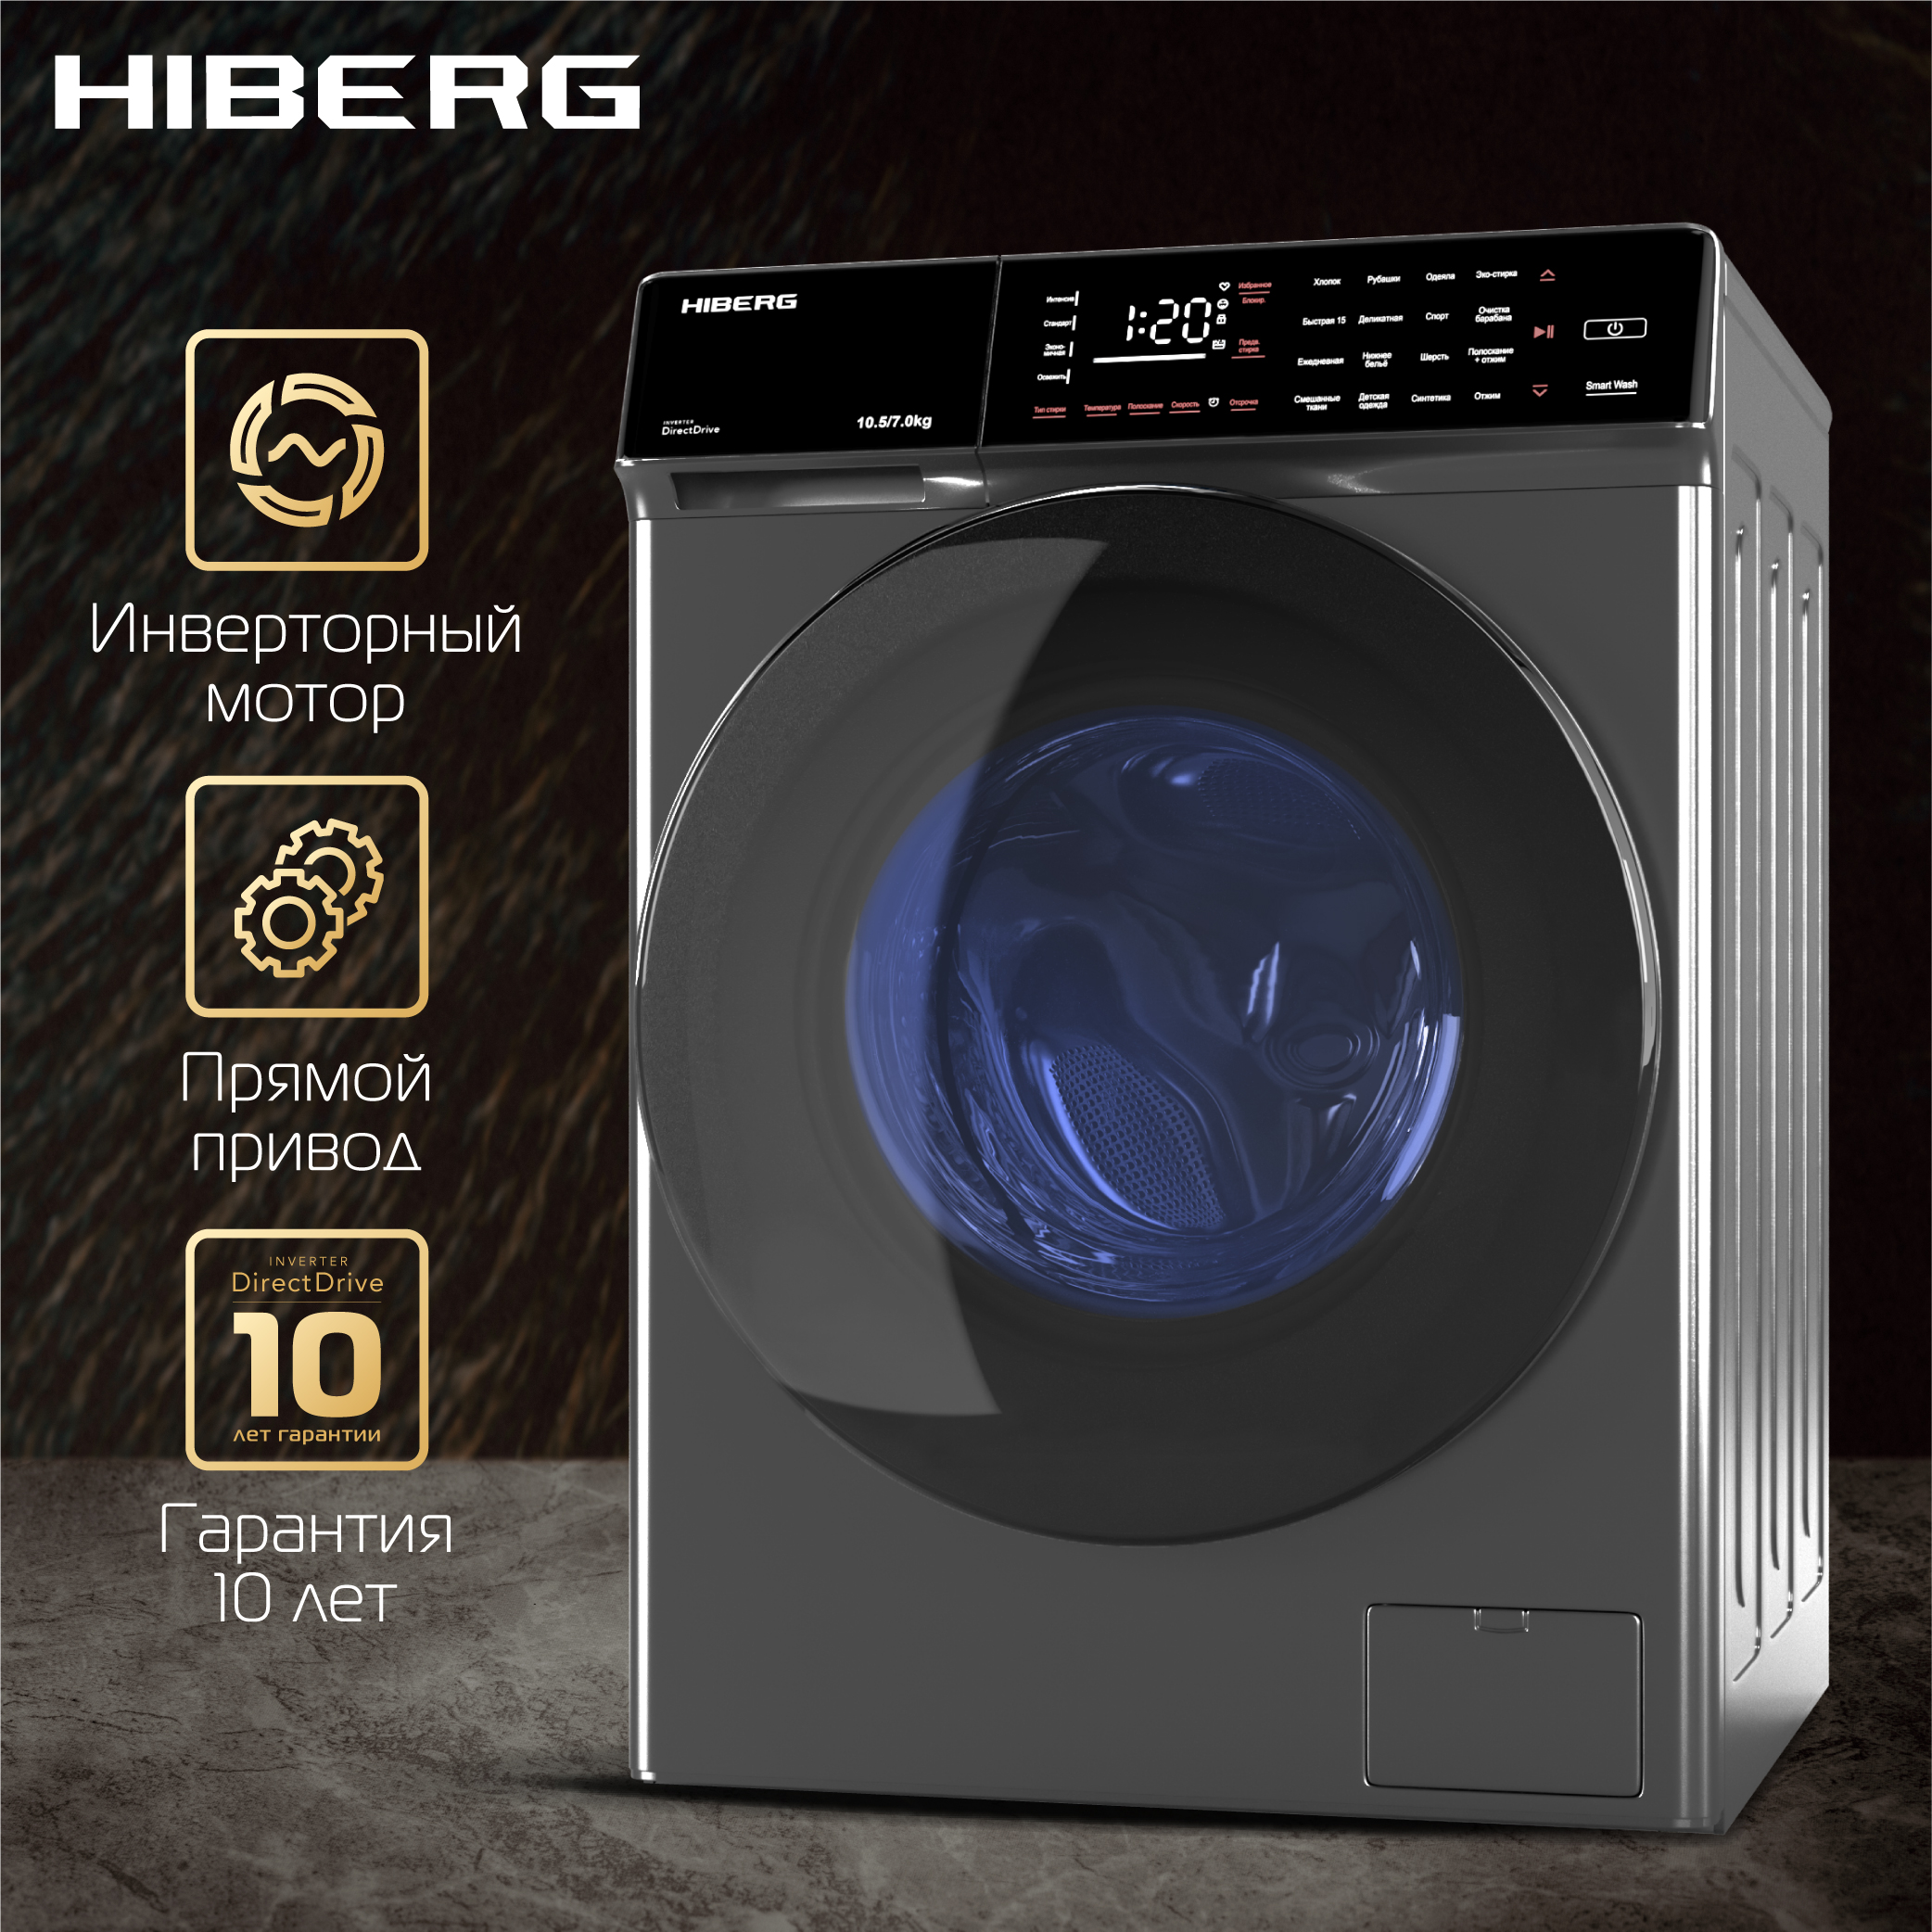 Стиральная машина Hiberg i-DDQ9 - 10714 Sd серебристый стиральная машина hiberg i ddq10 10714 w белый